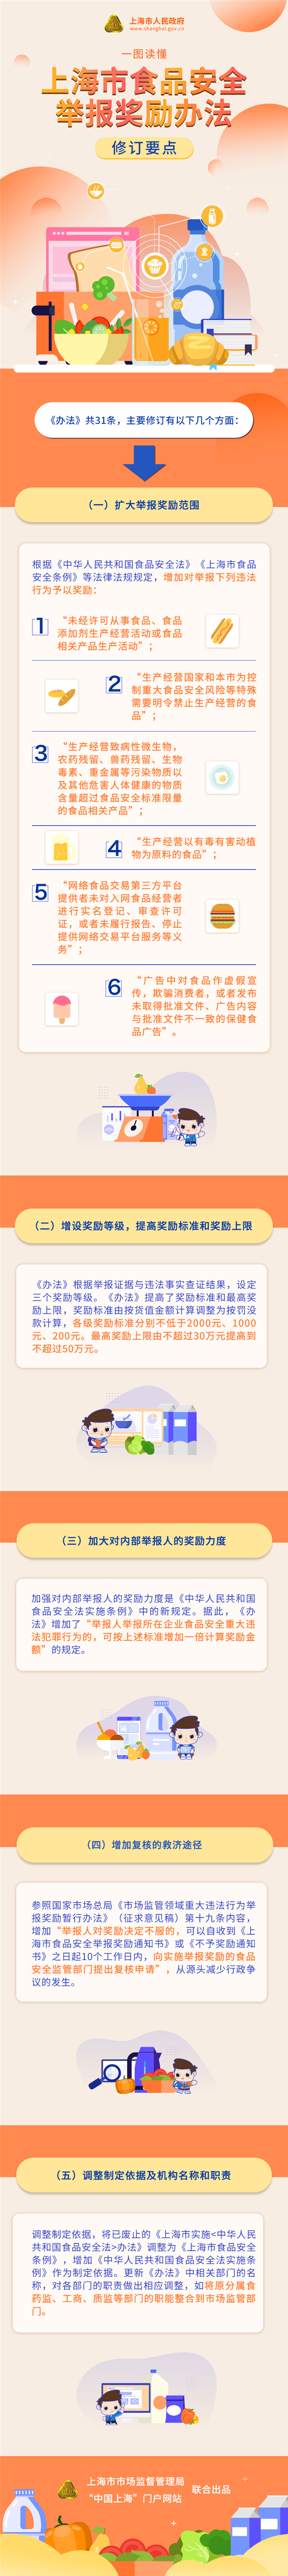 一图读懂《上海市食品安全举报奖励办法》修订要点